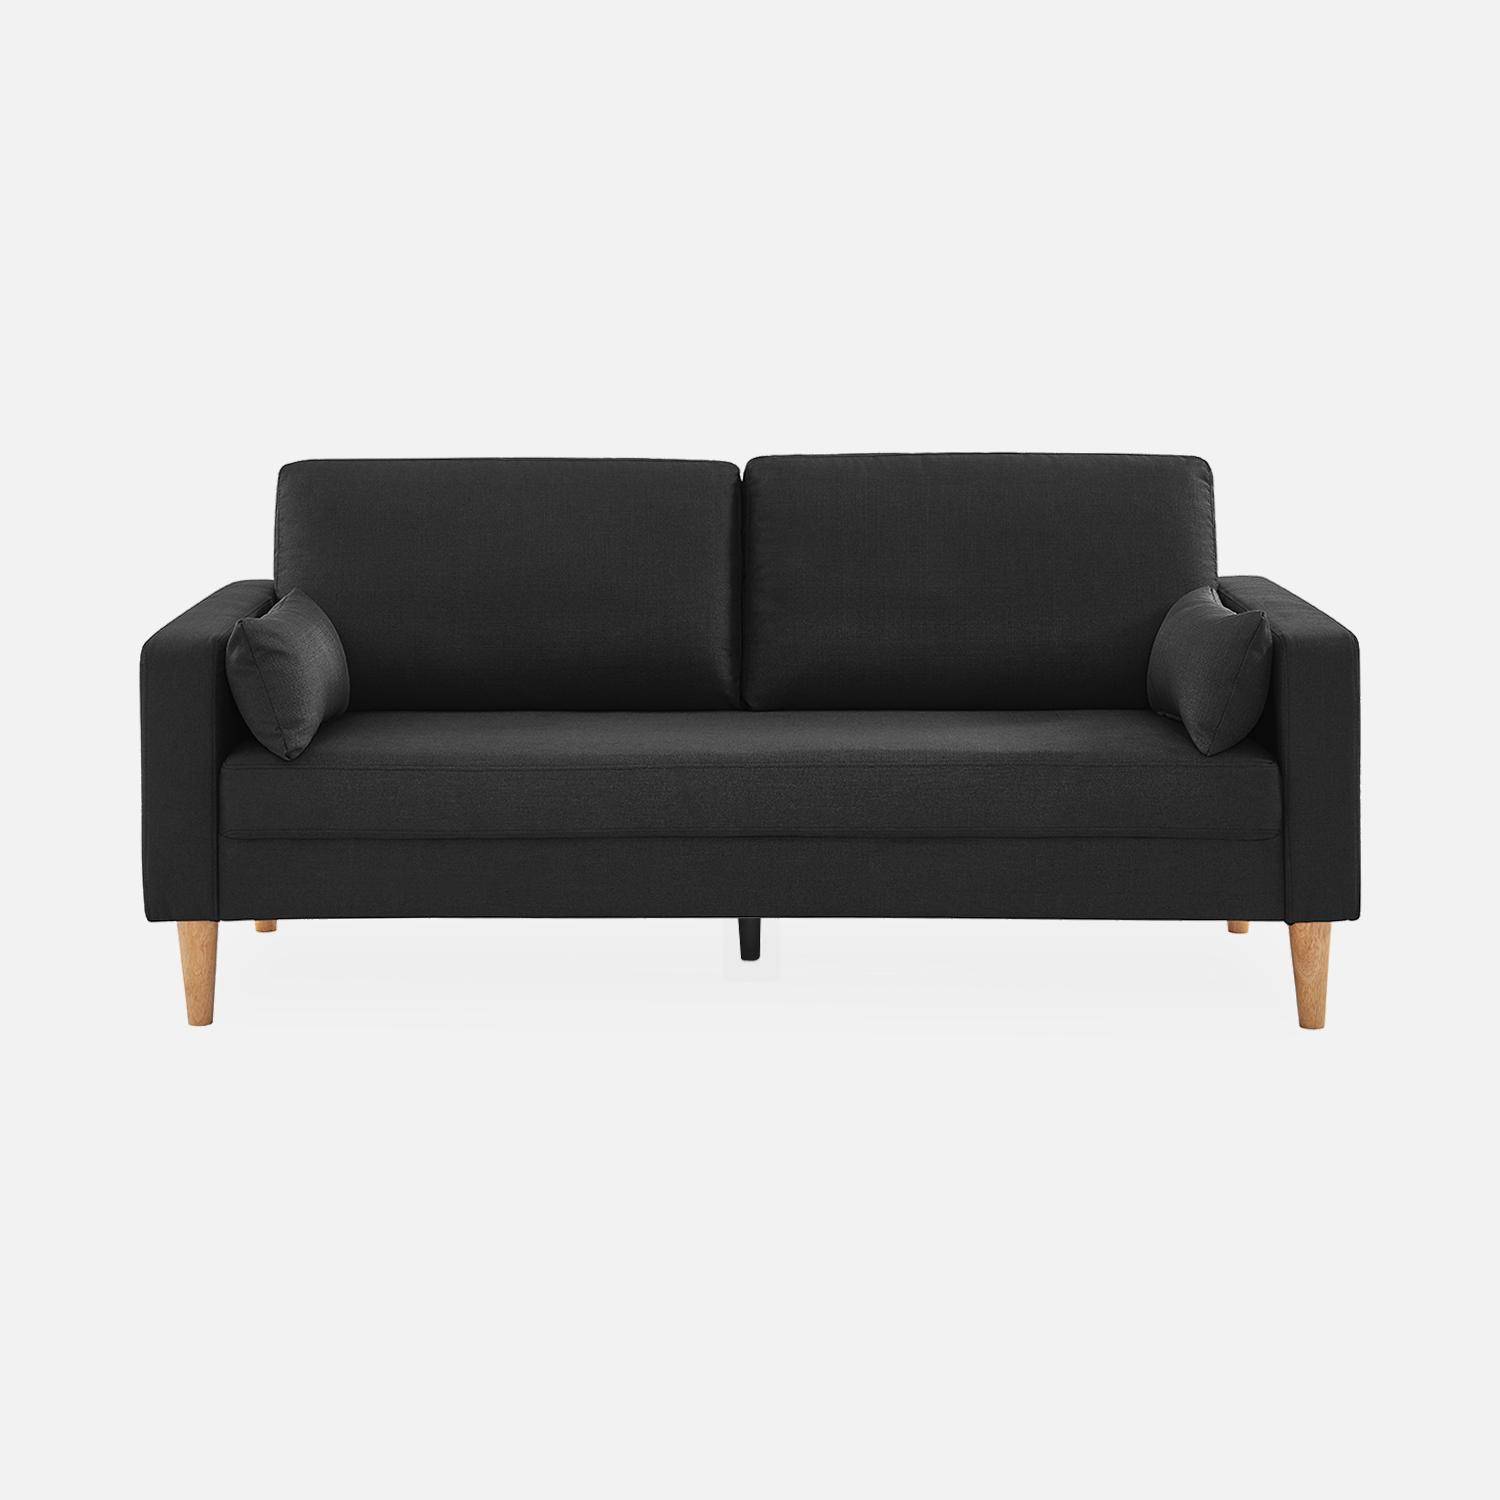 Donkergrijze stoffen driezits sofa - Bjorn - 3-zits bank met houten poten, scandinavische stijl  ,sweeek,Photo3